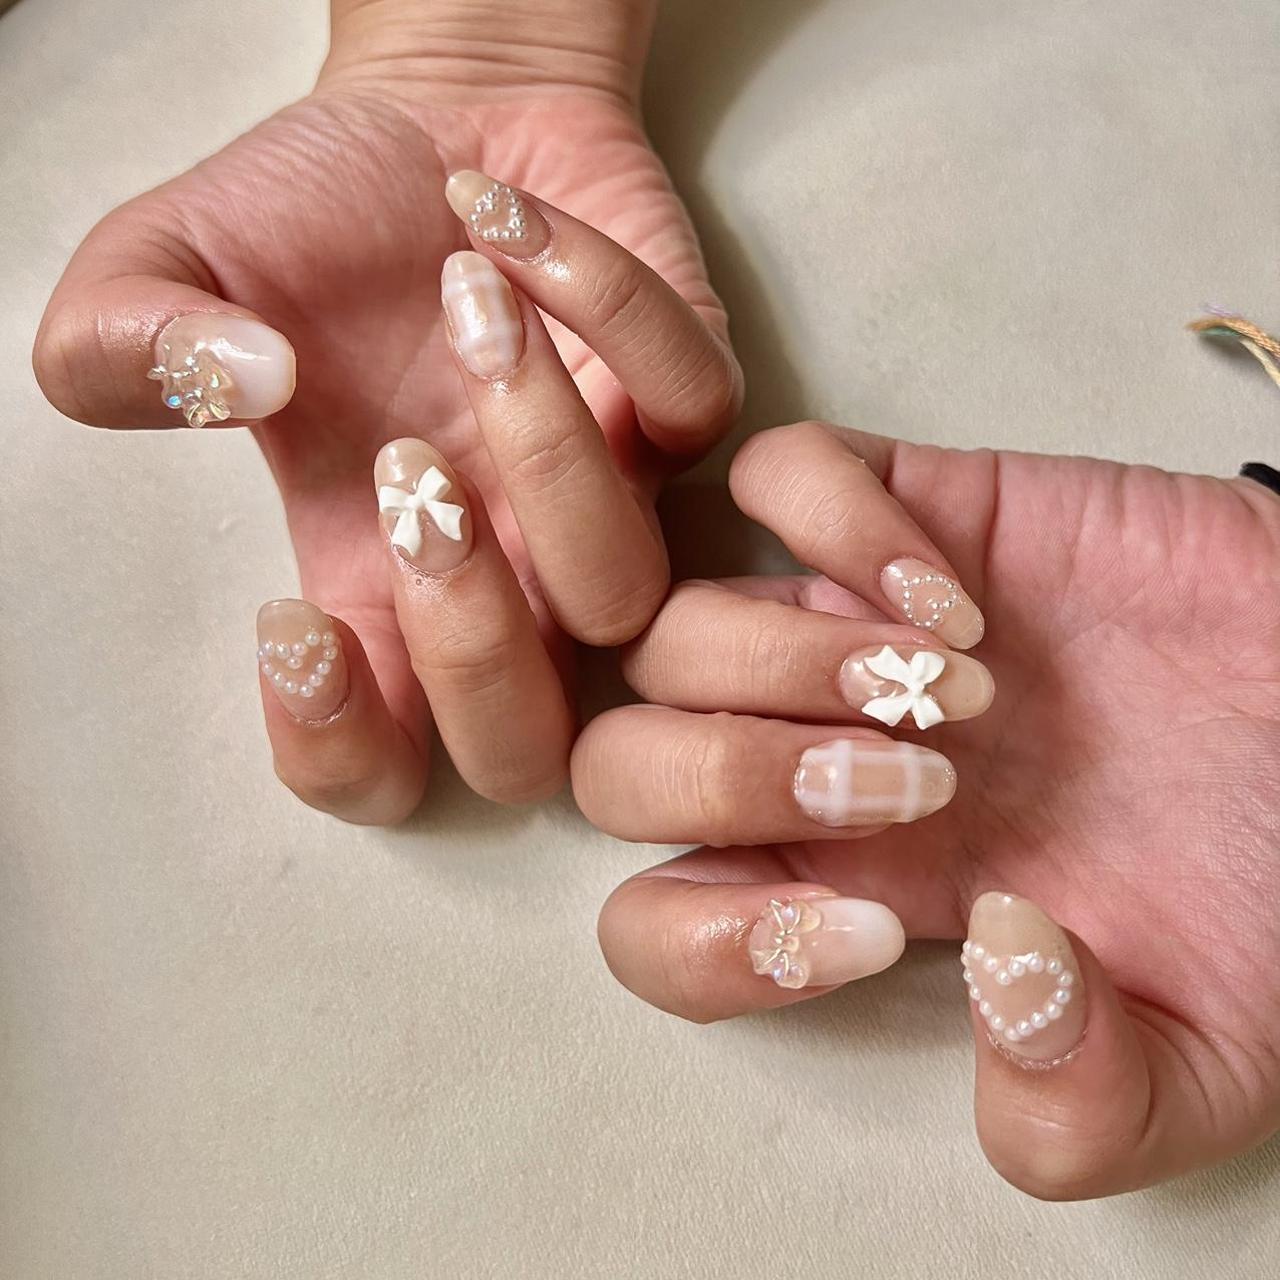 Louis Vuitton nails  Nails, Louis vuitton nails, Jelly nails